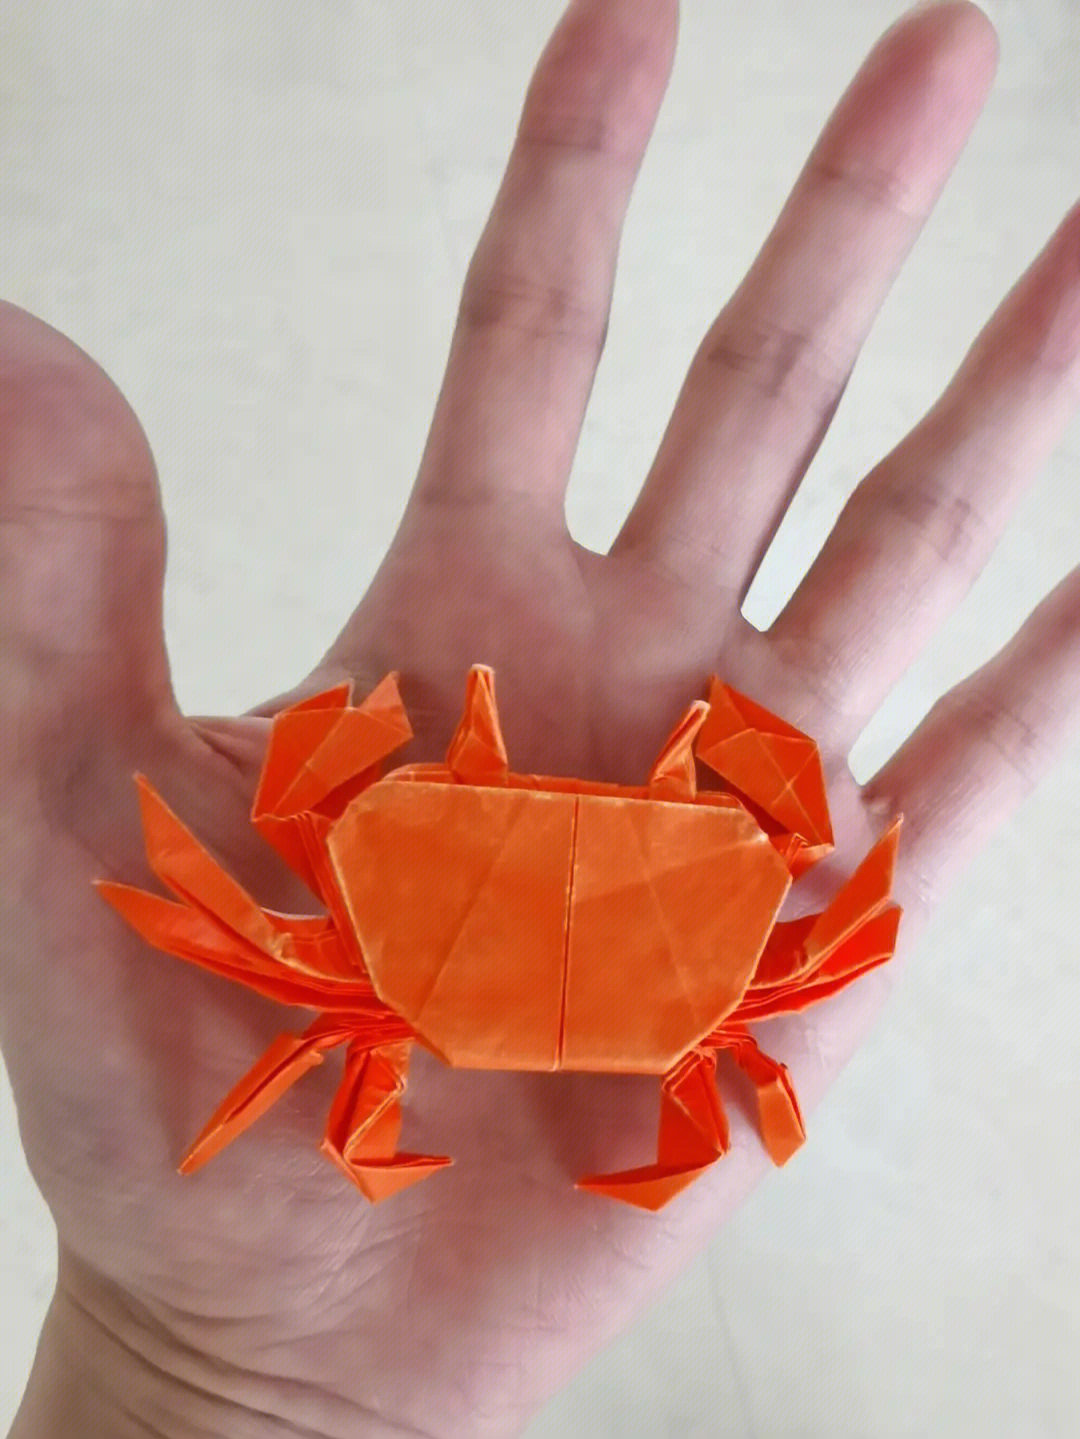 八条腿螃蟹折纸的图解图片